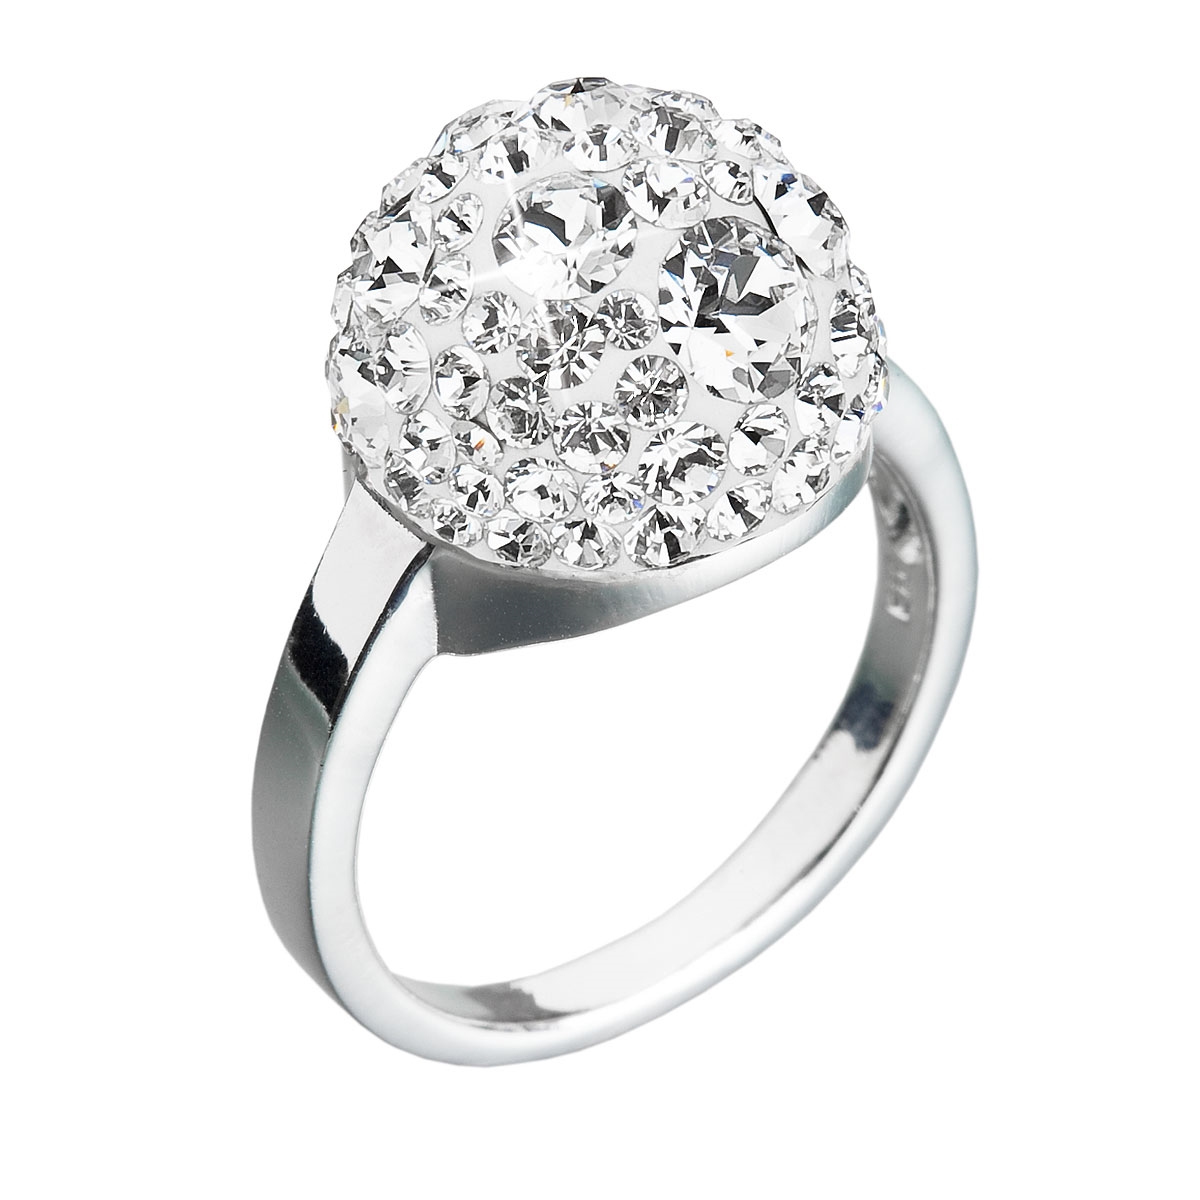 Strieborný prsteň s kryštálmi Crystals from Swarovski ®, Crystal